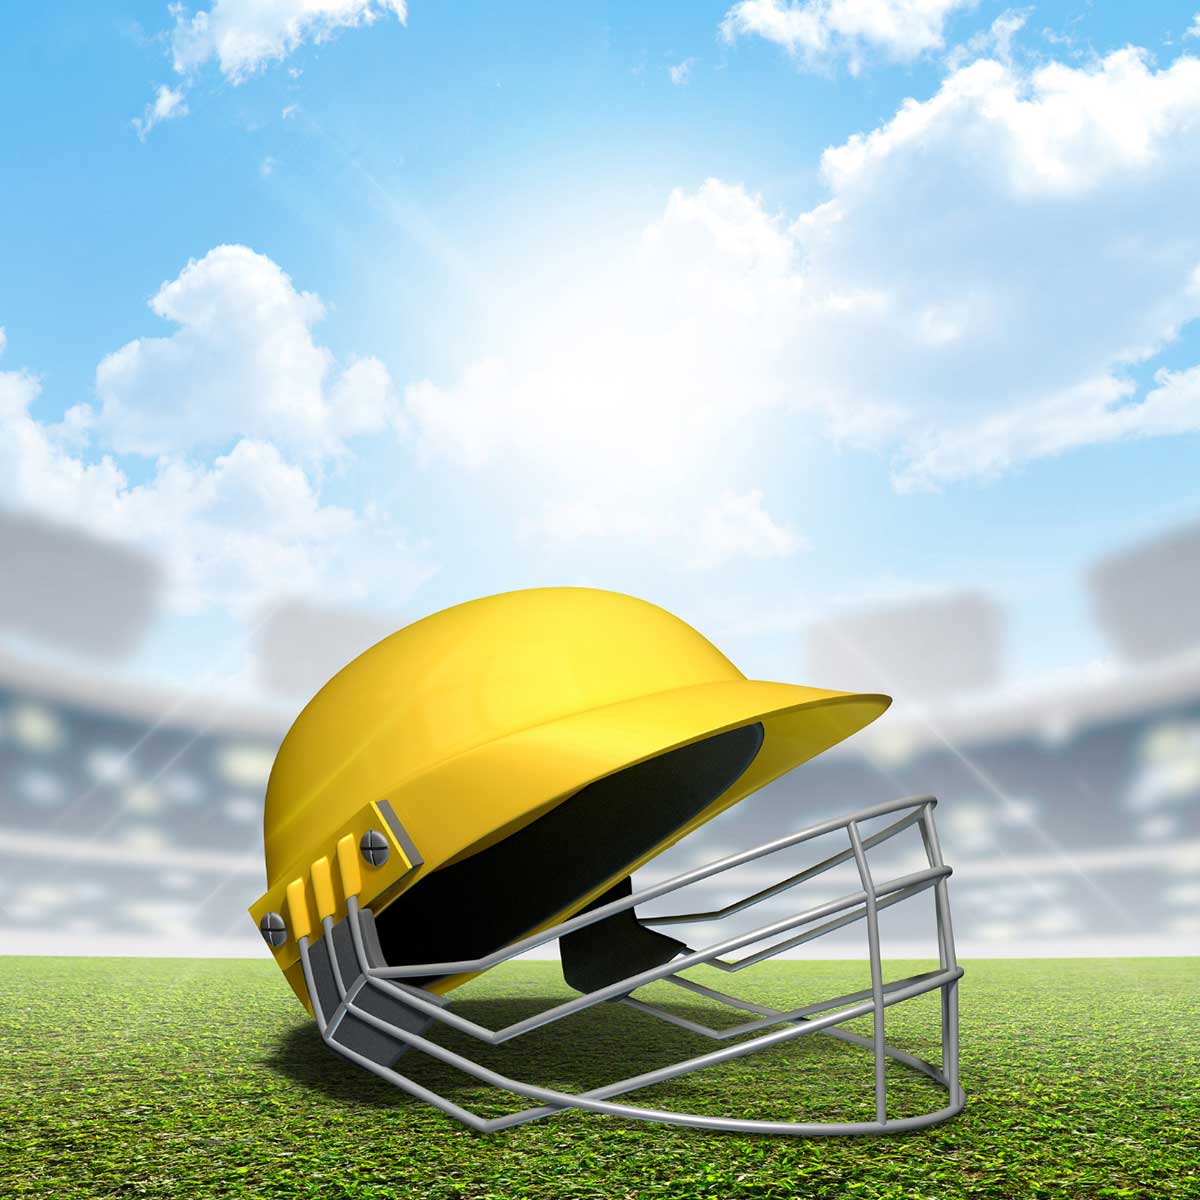 Cricket Helmet Manufacturers in Ufa